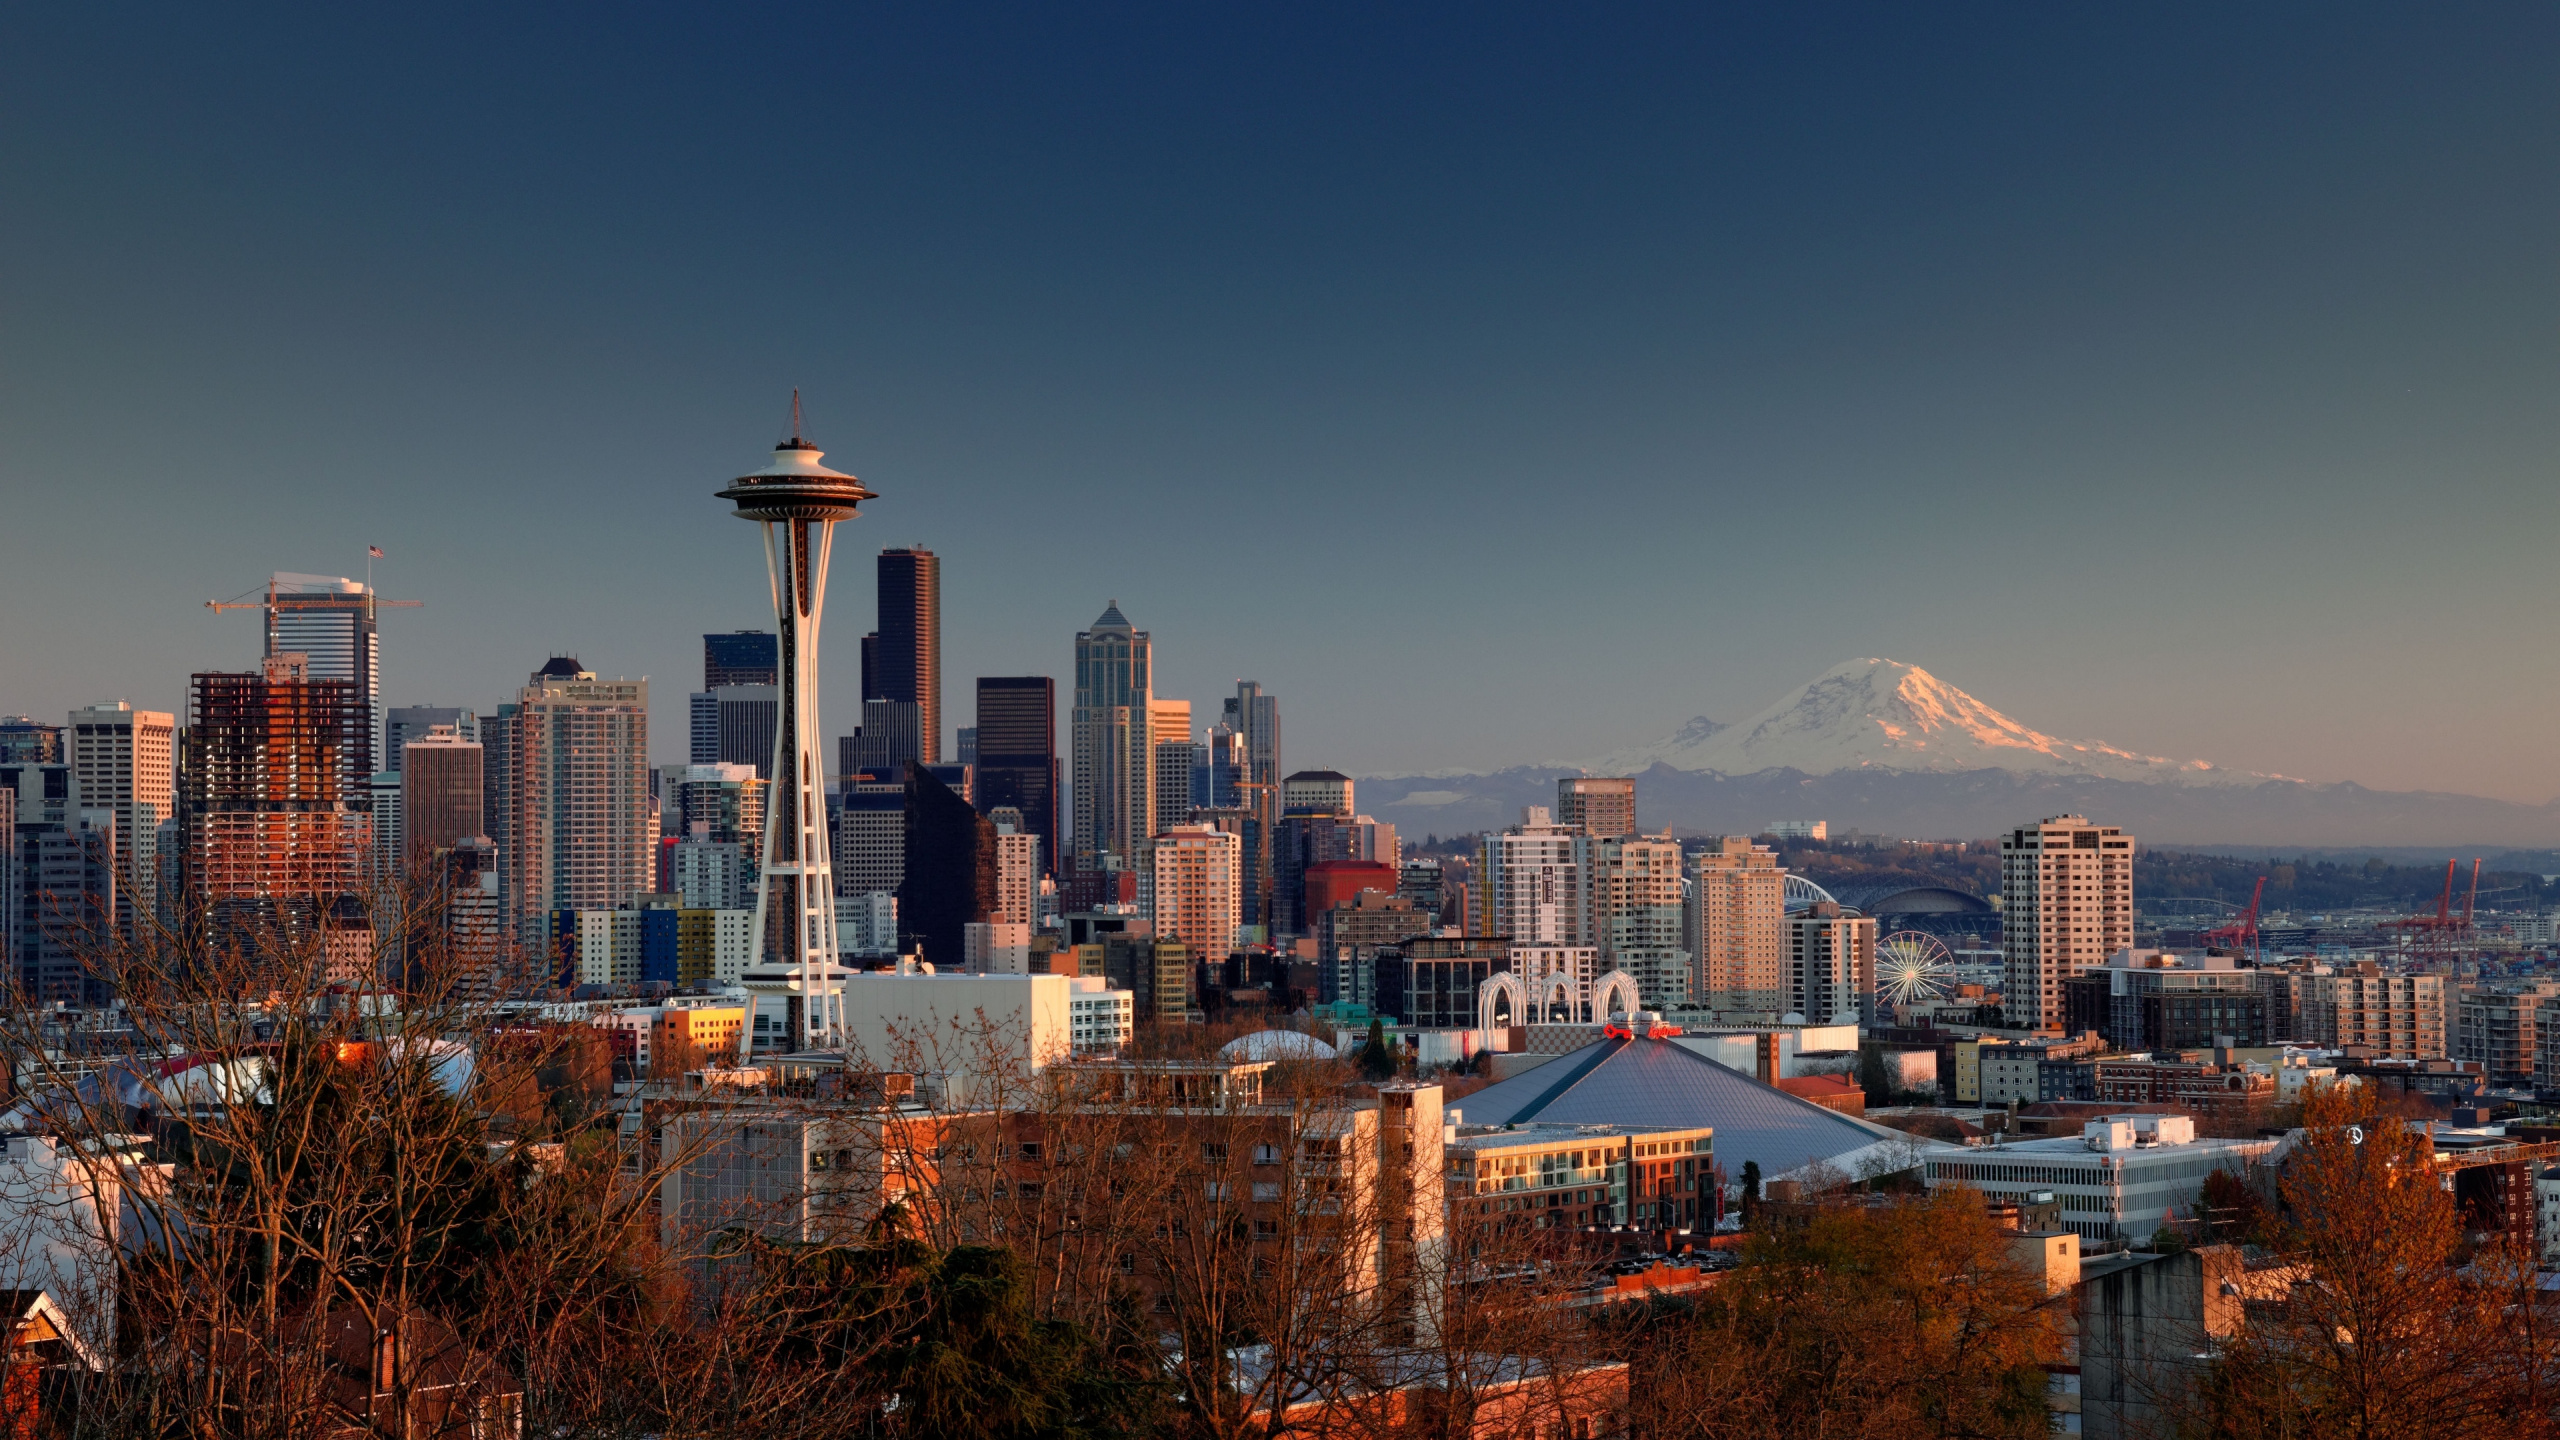 西雅图, 城市, 城市景观, 天际线, 大都会 壁纸 2560x1440 允许